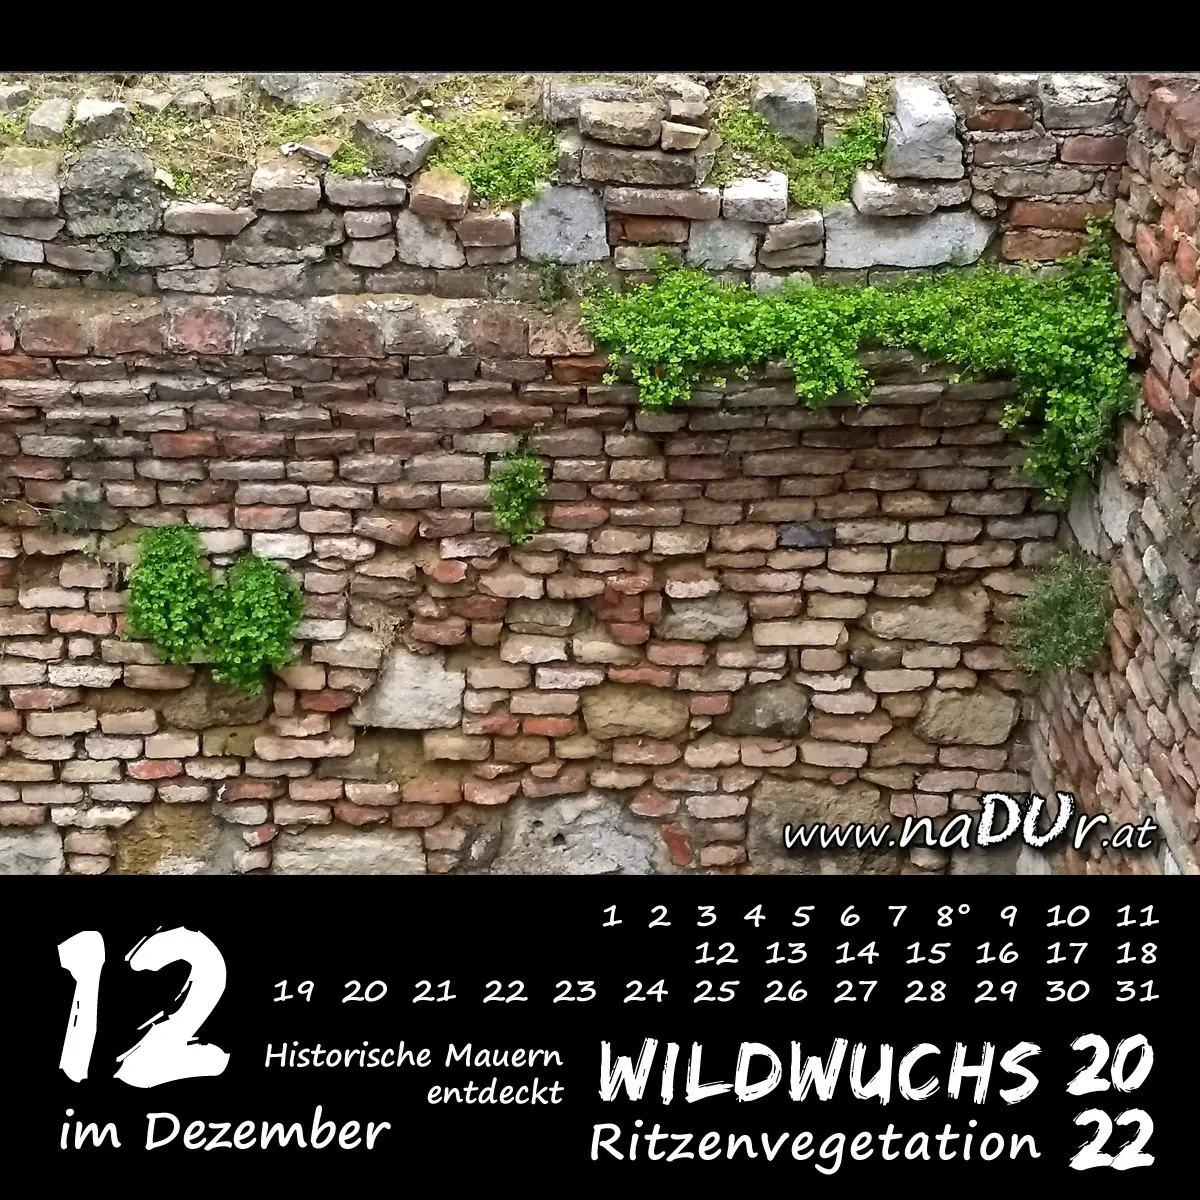 Historische Mauern mit viel Ritzenvegetation im Dezember entdeckt